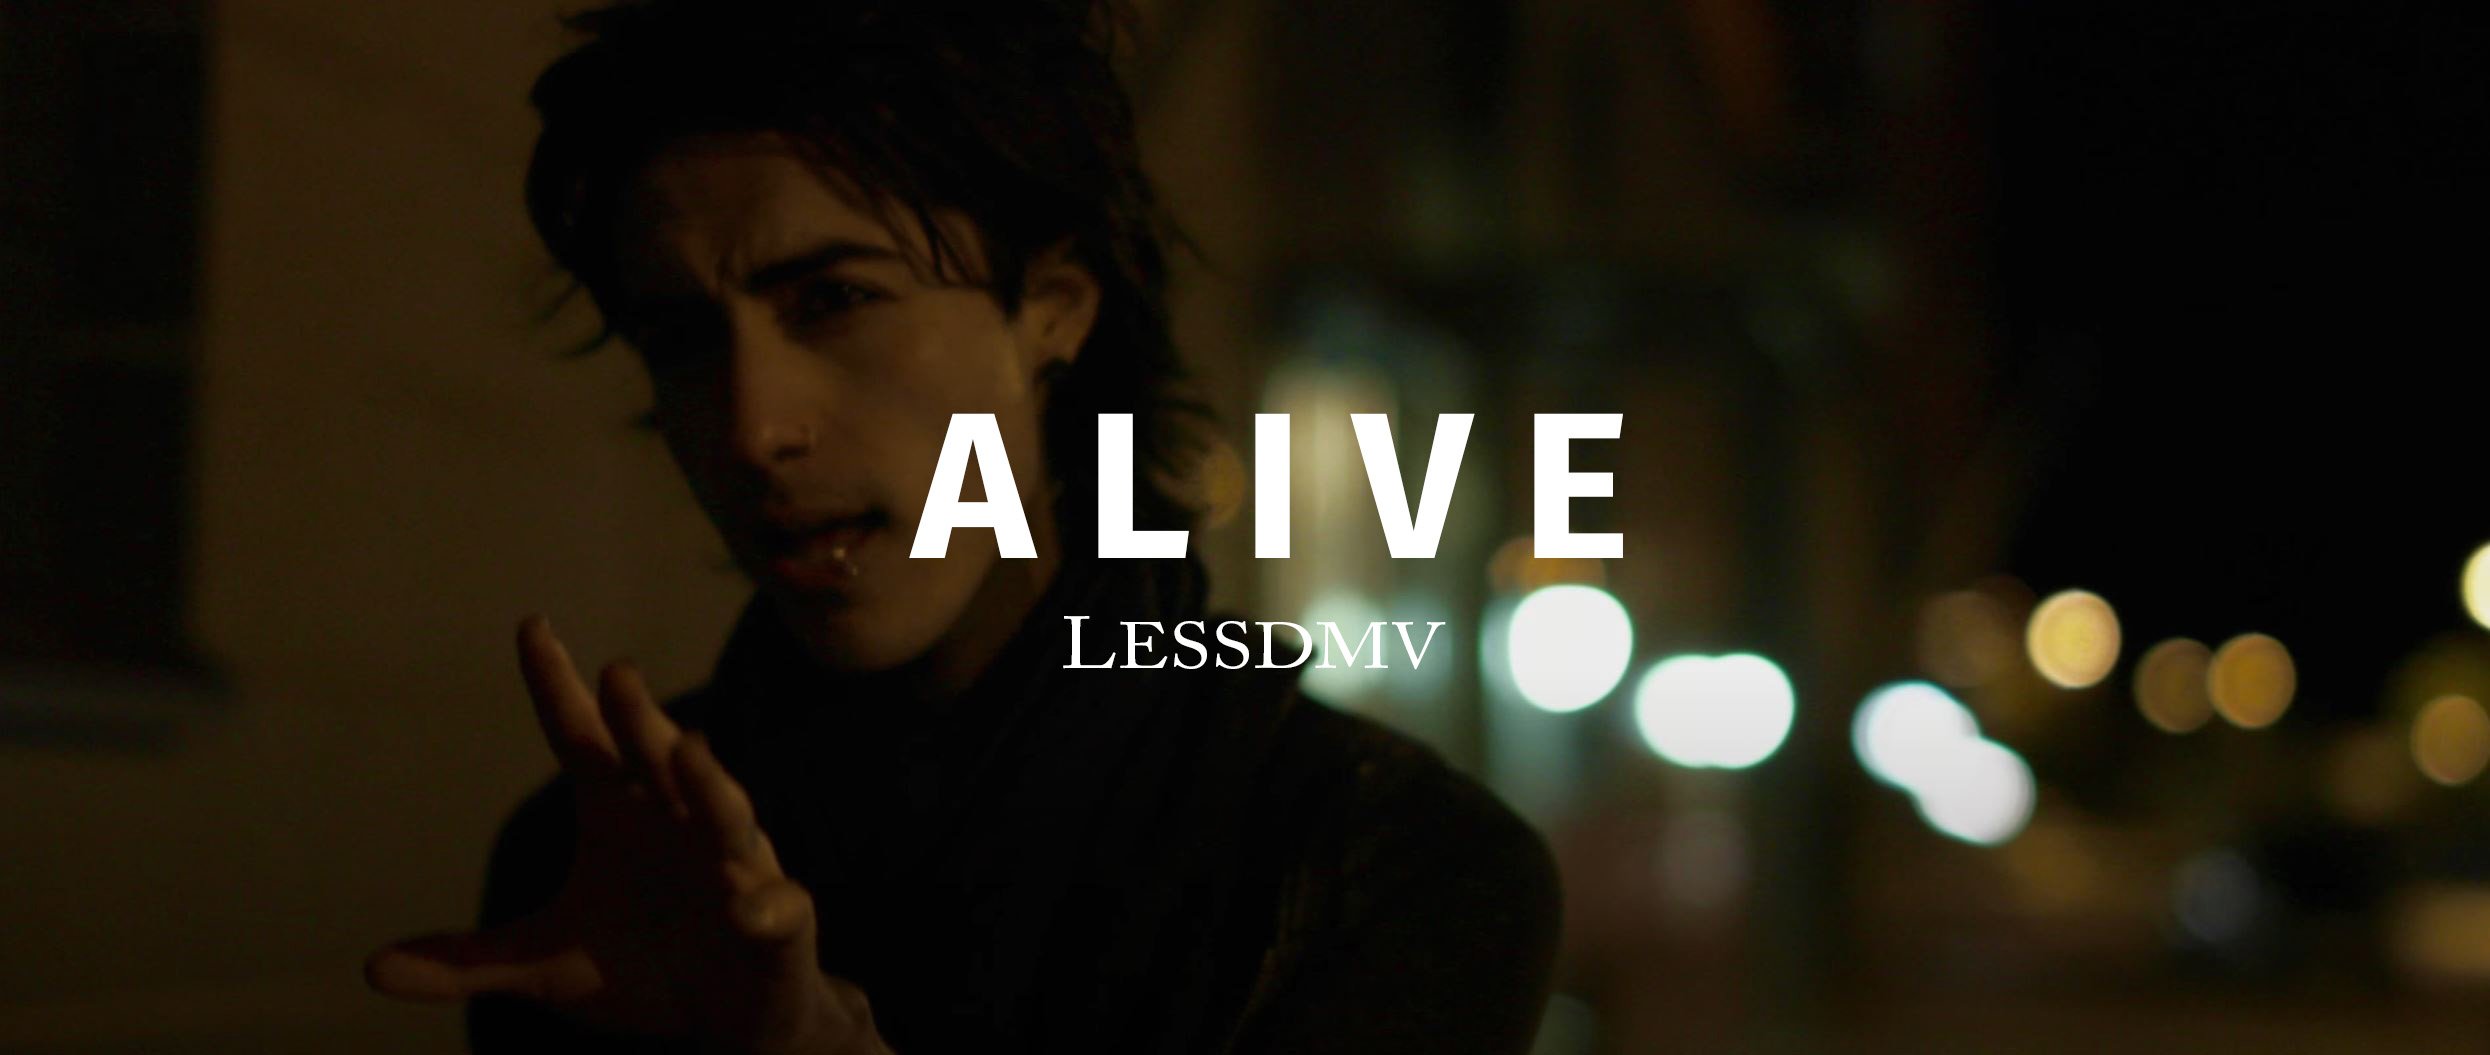 Lessdmv - Alive